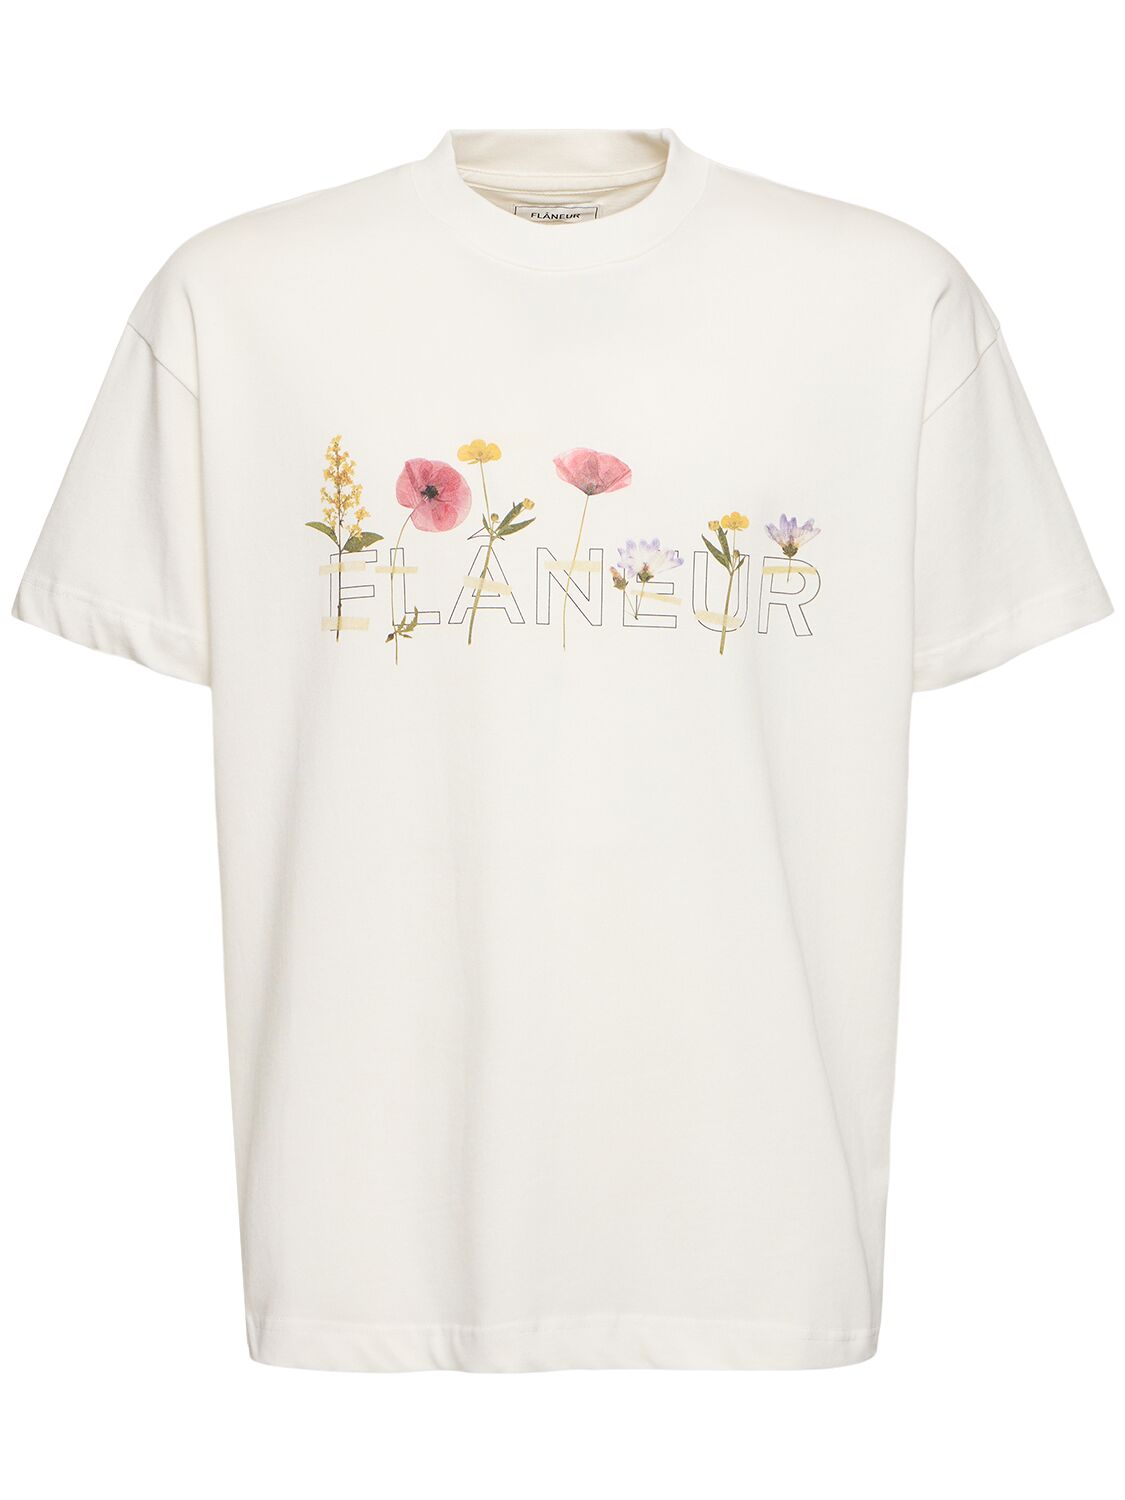 Flâneur Botanical T-shirt In White Oc